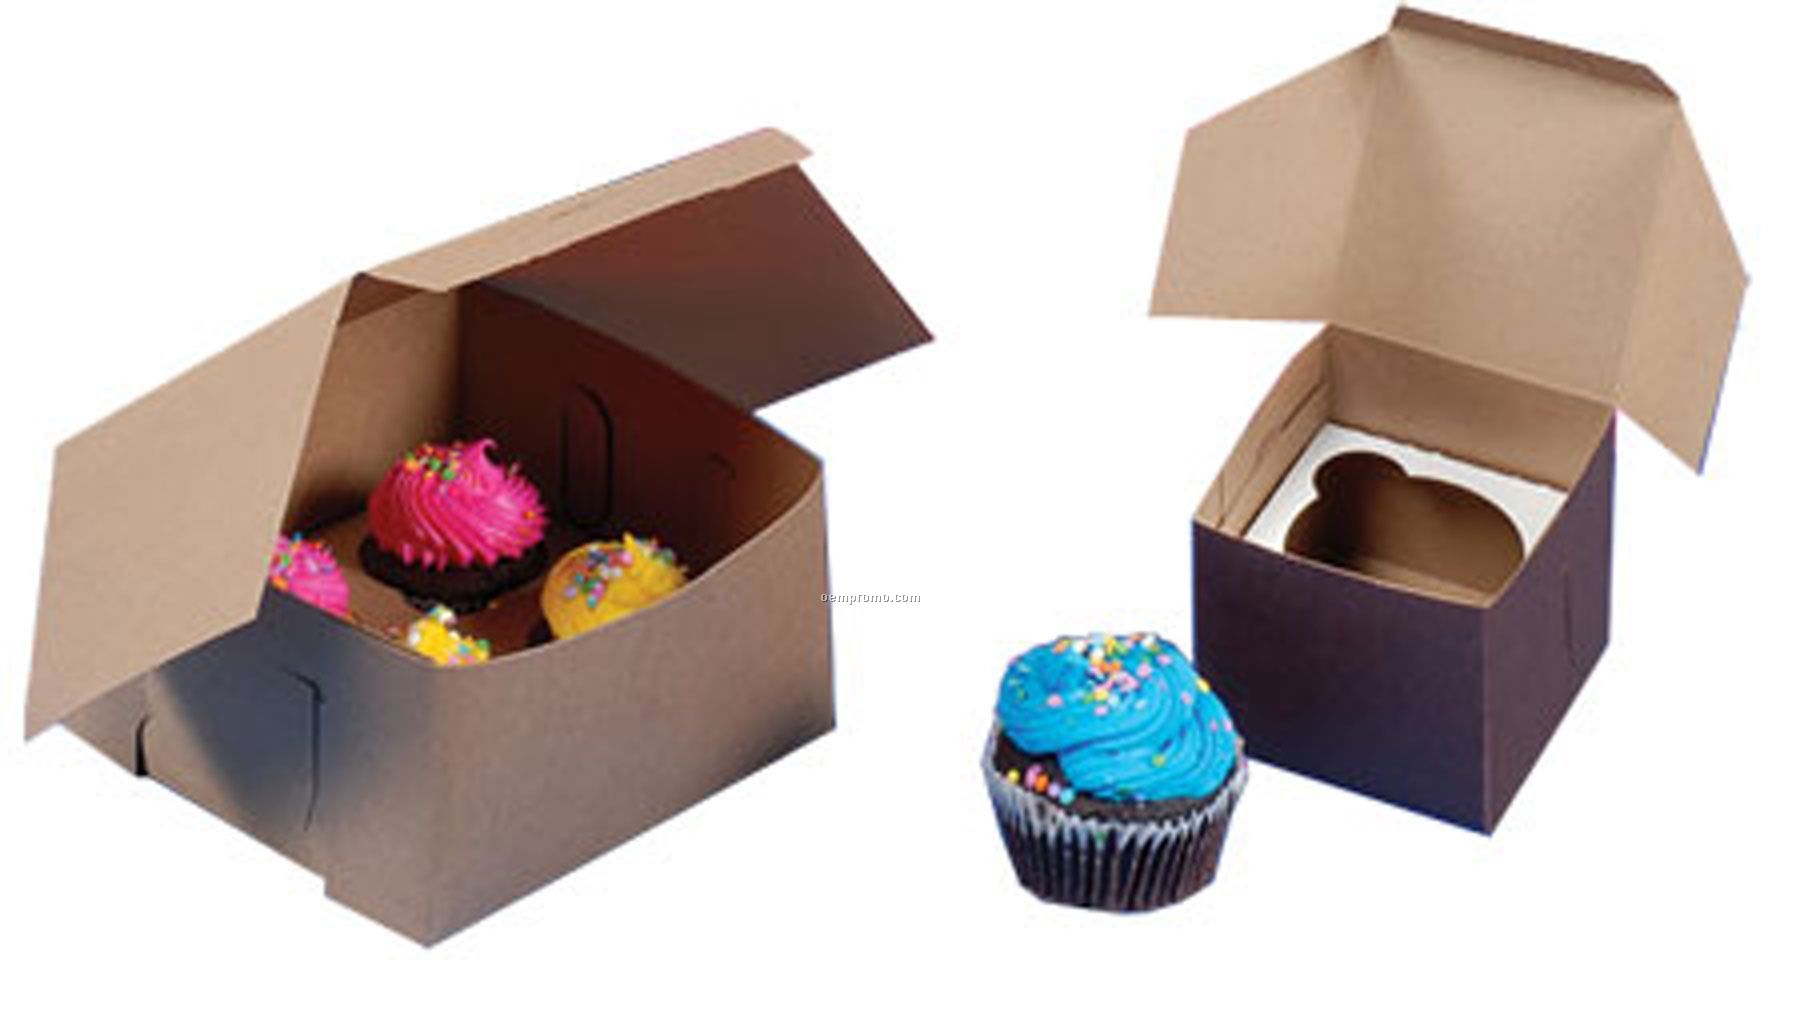 4 Mini/Reg Cupcake Boxes (7"X7"X4")